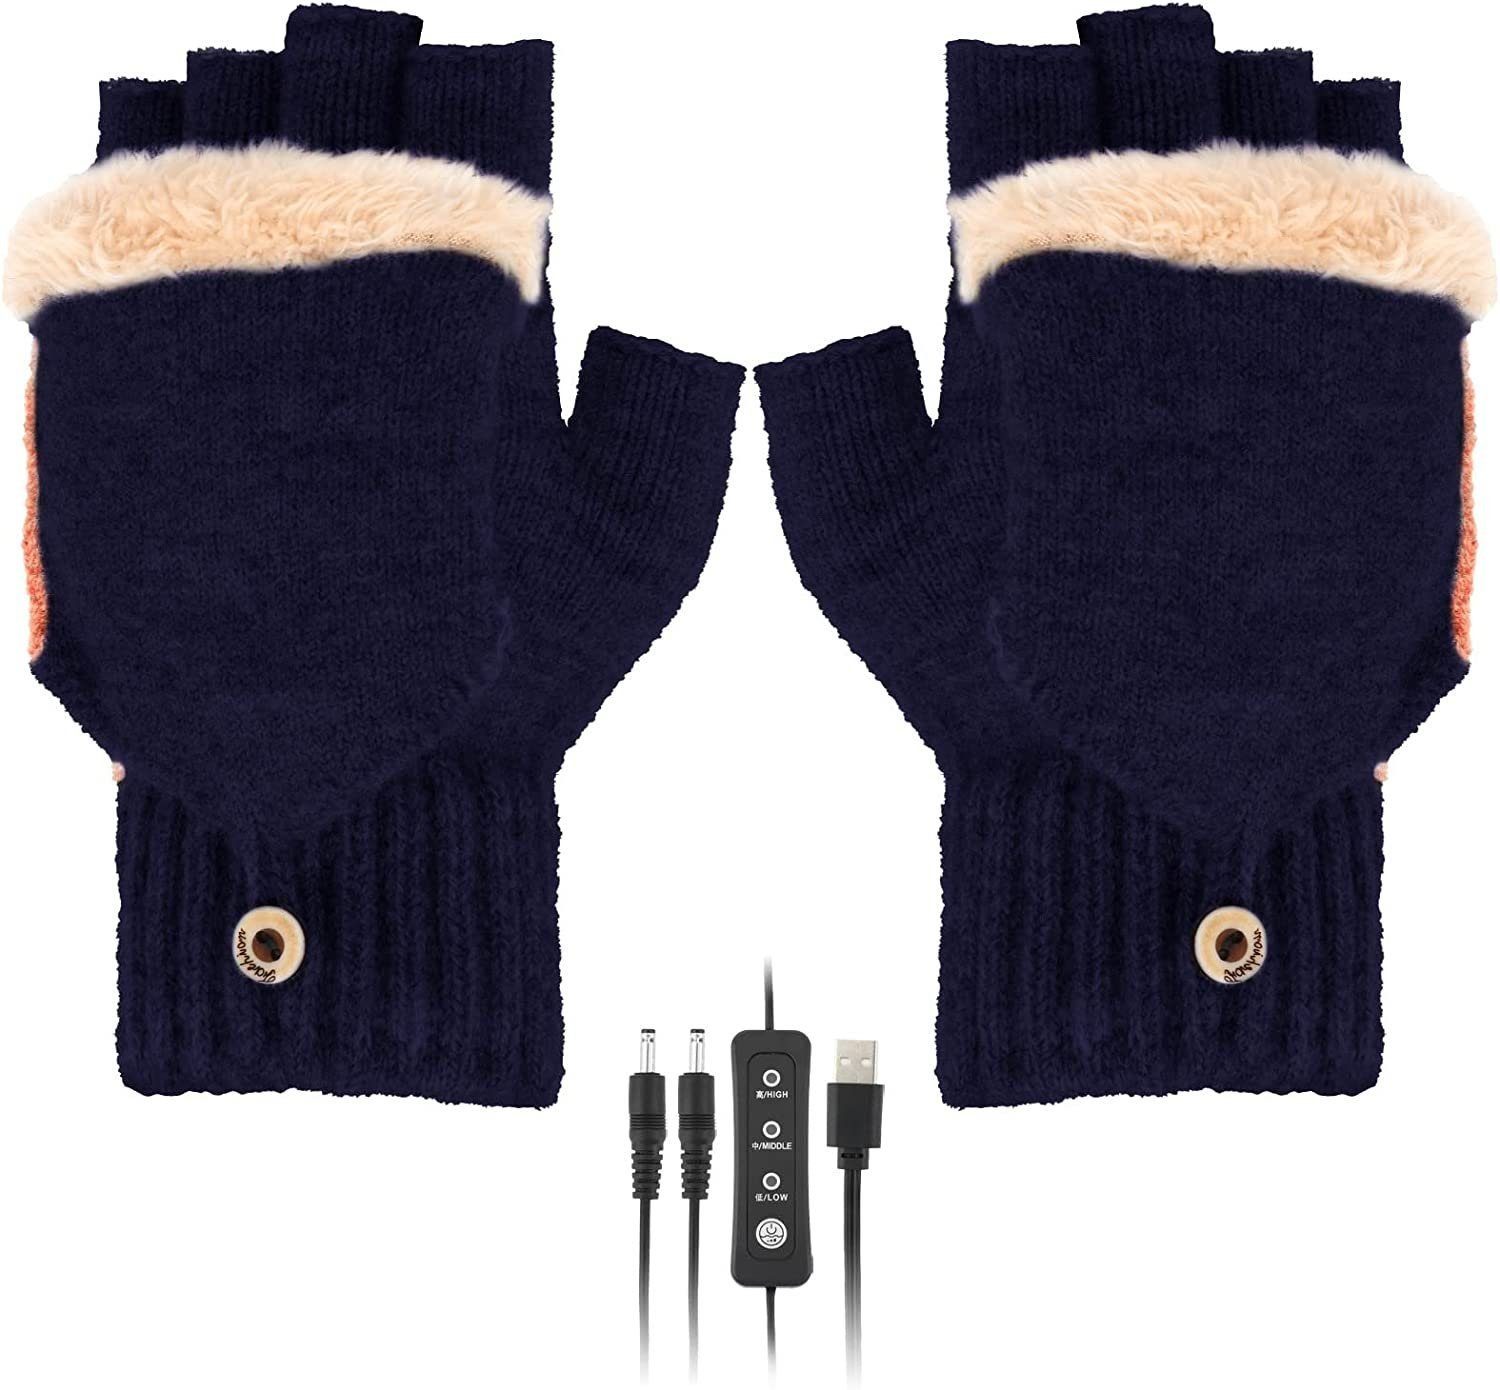 YYV Strickhandschuhe Strickhandschuhe Handschuhe,Winterhandschuhe mit 3 Stufentemperaturen für Ski Wandern